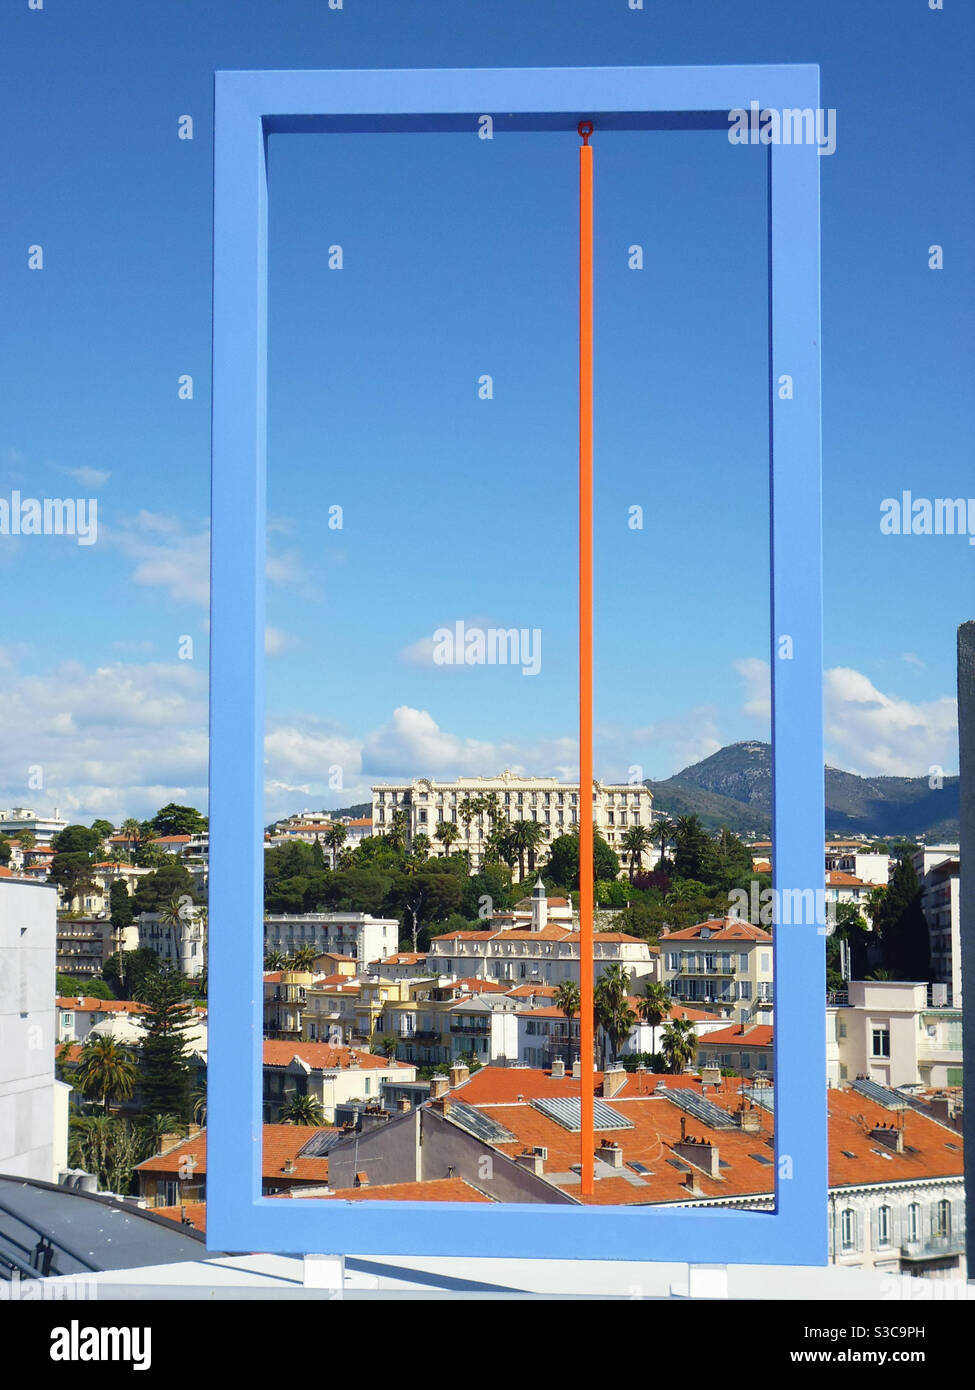 Stadt Nizza, Frankreich. Blick auf die Dächer von einem rechteckigen Rahmen Kunstwerk Stockfoto